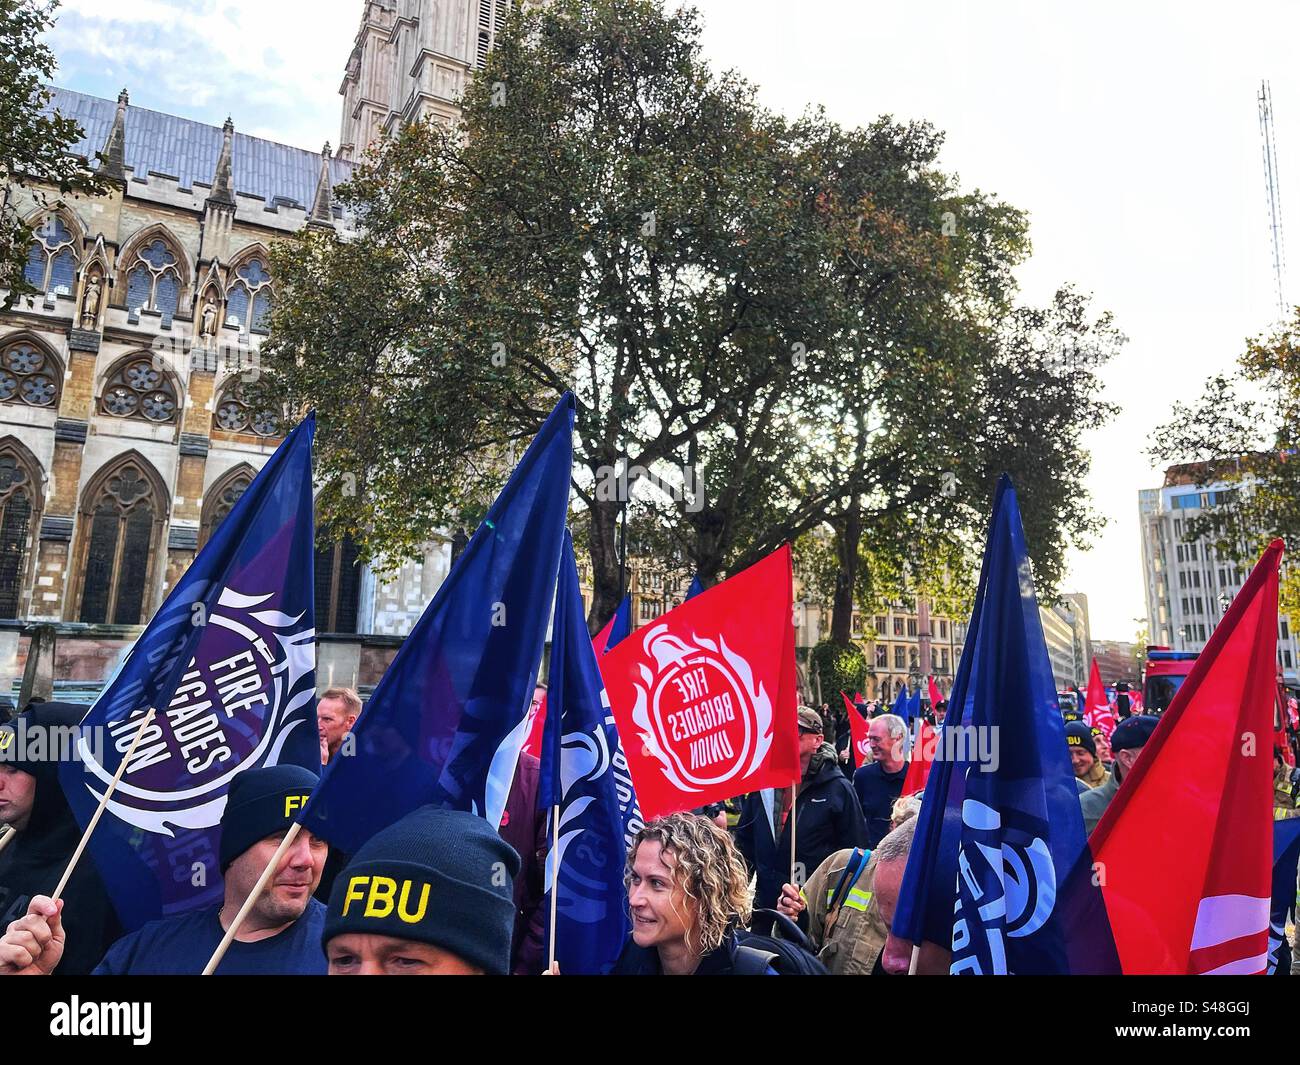 Drapeaux rouges et bleus de l'Union des pompiers - FBU - représentant les pompiers au Royaume-Uni. Vu à Westminster, Londres Banque D'Images